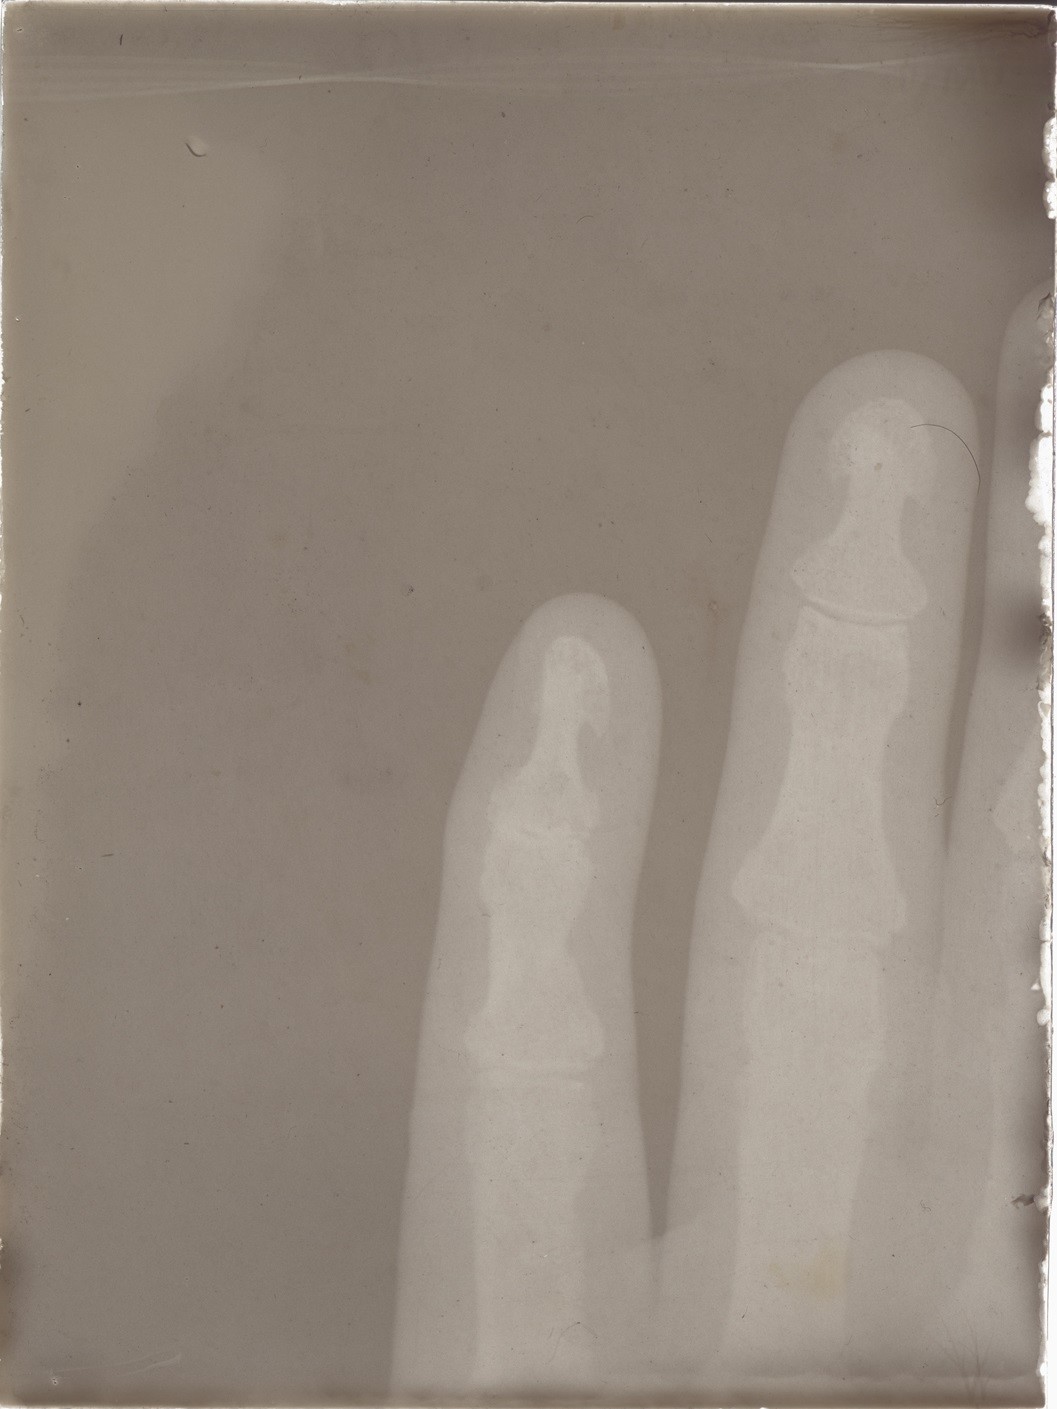 Versuch: Röntgenaufnahme einer Hand (06.06.1896), 86354 gp (Deutsches Röntgen-Museum CC BY-NC-SA)